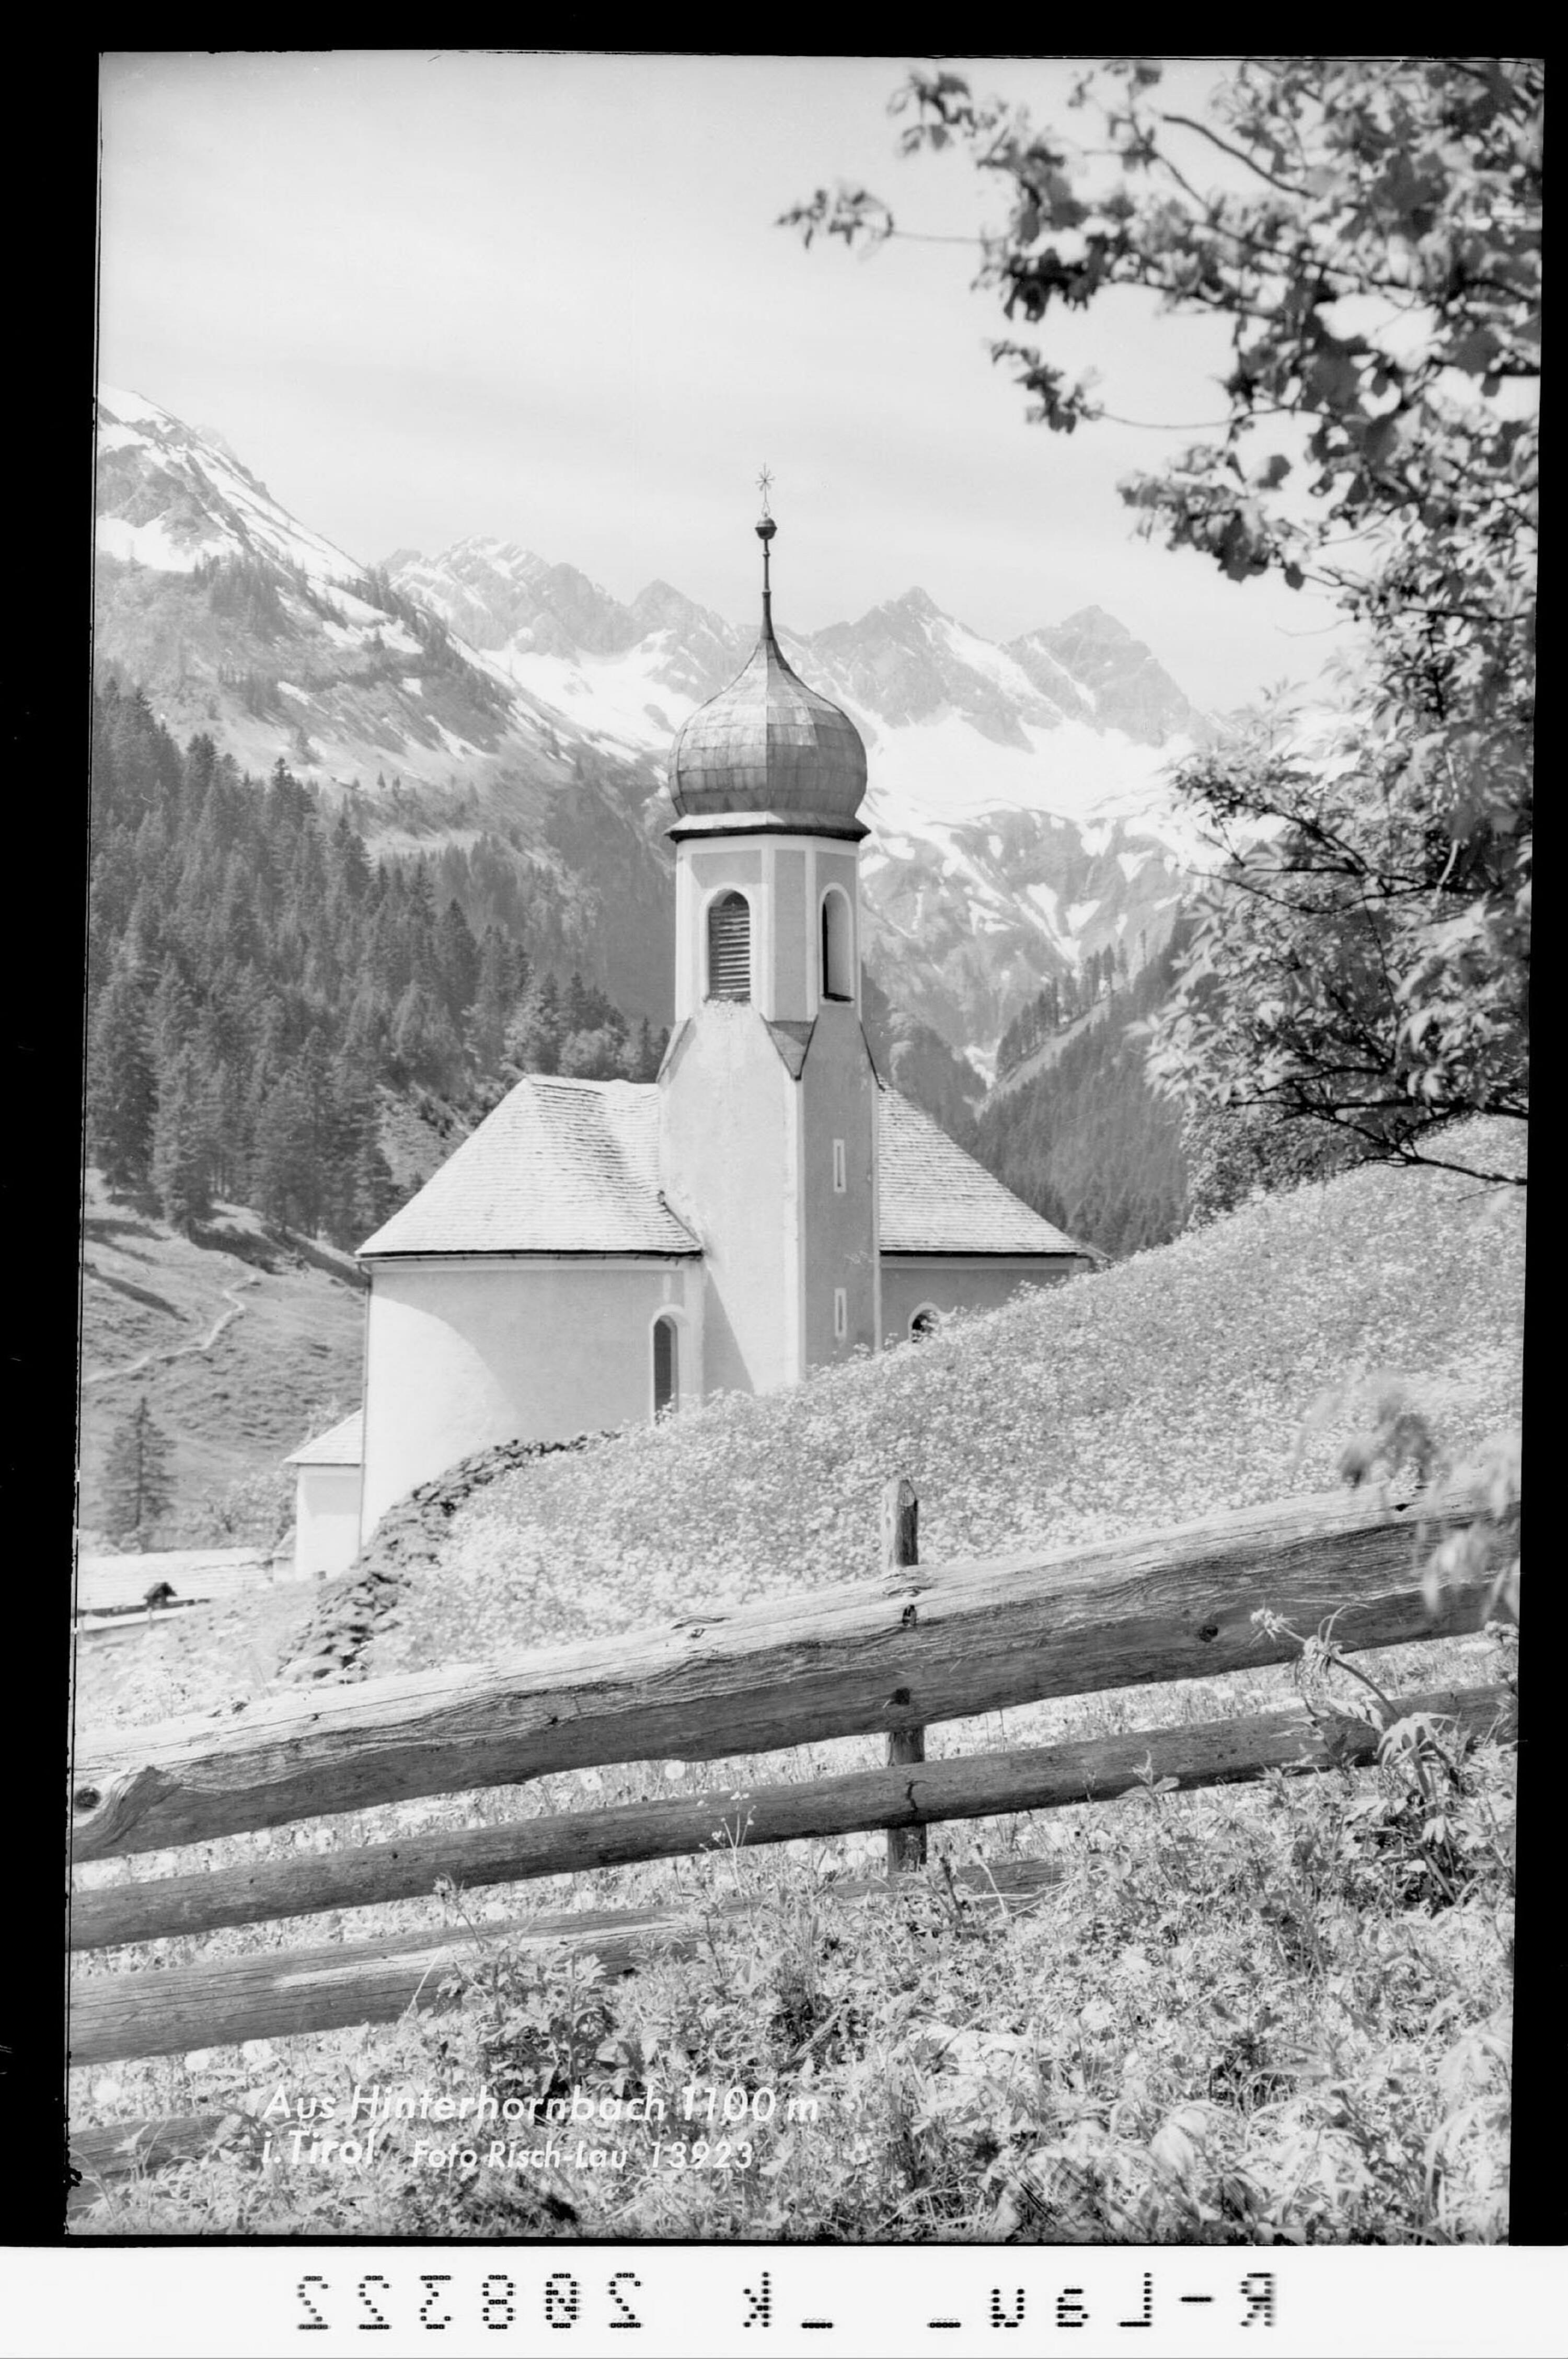 Aus Hinterhornbach 1106 m in Tirol></div>


    <hr>
    <div class=